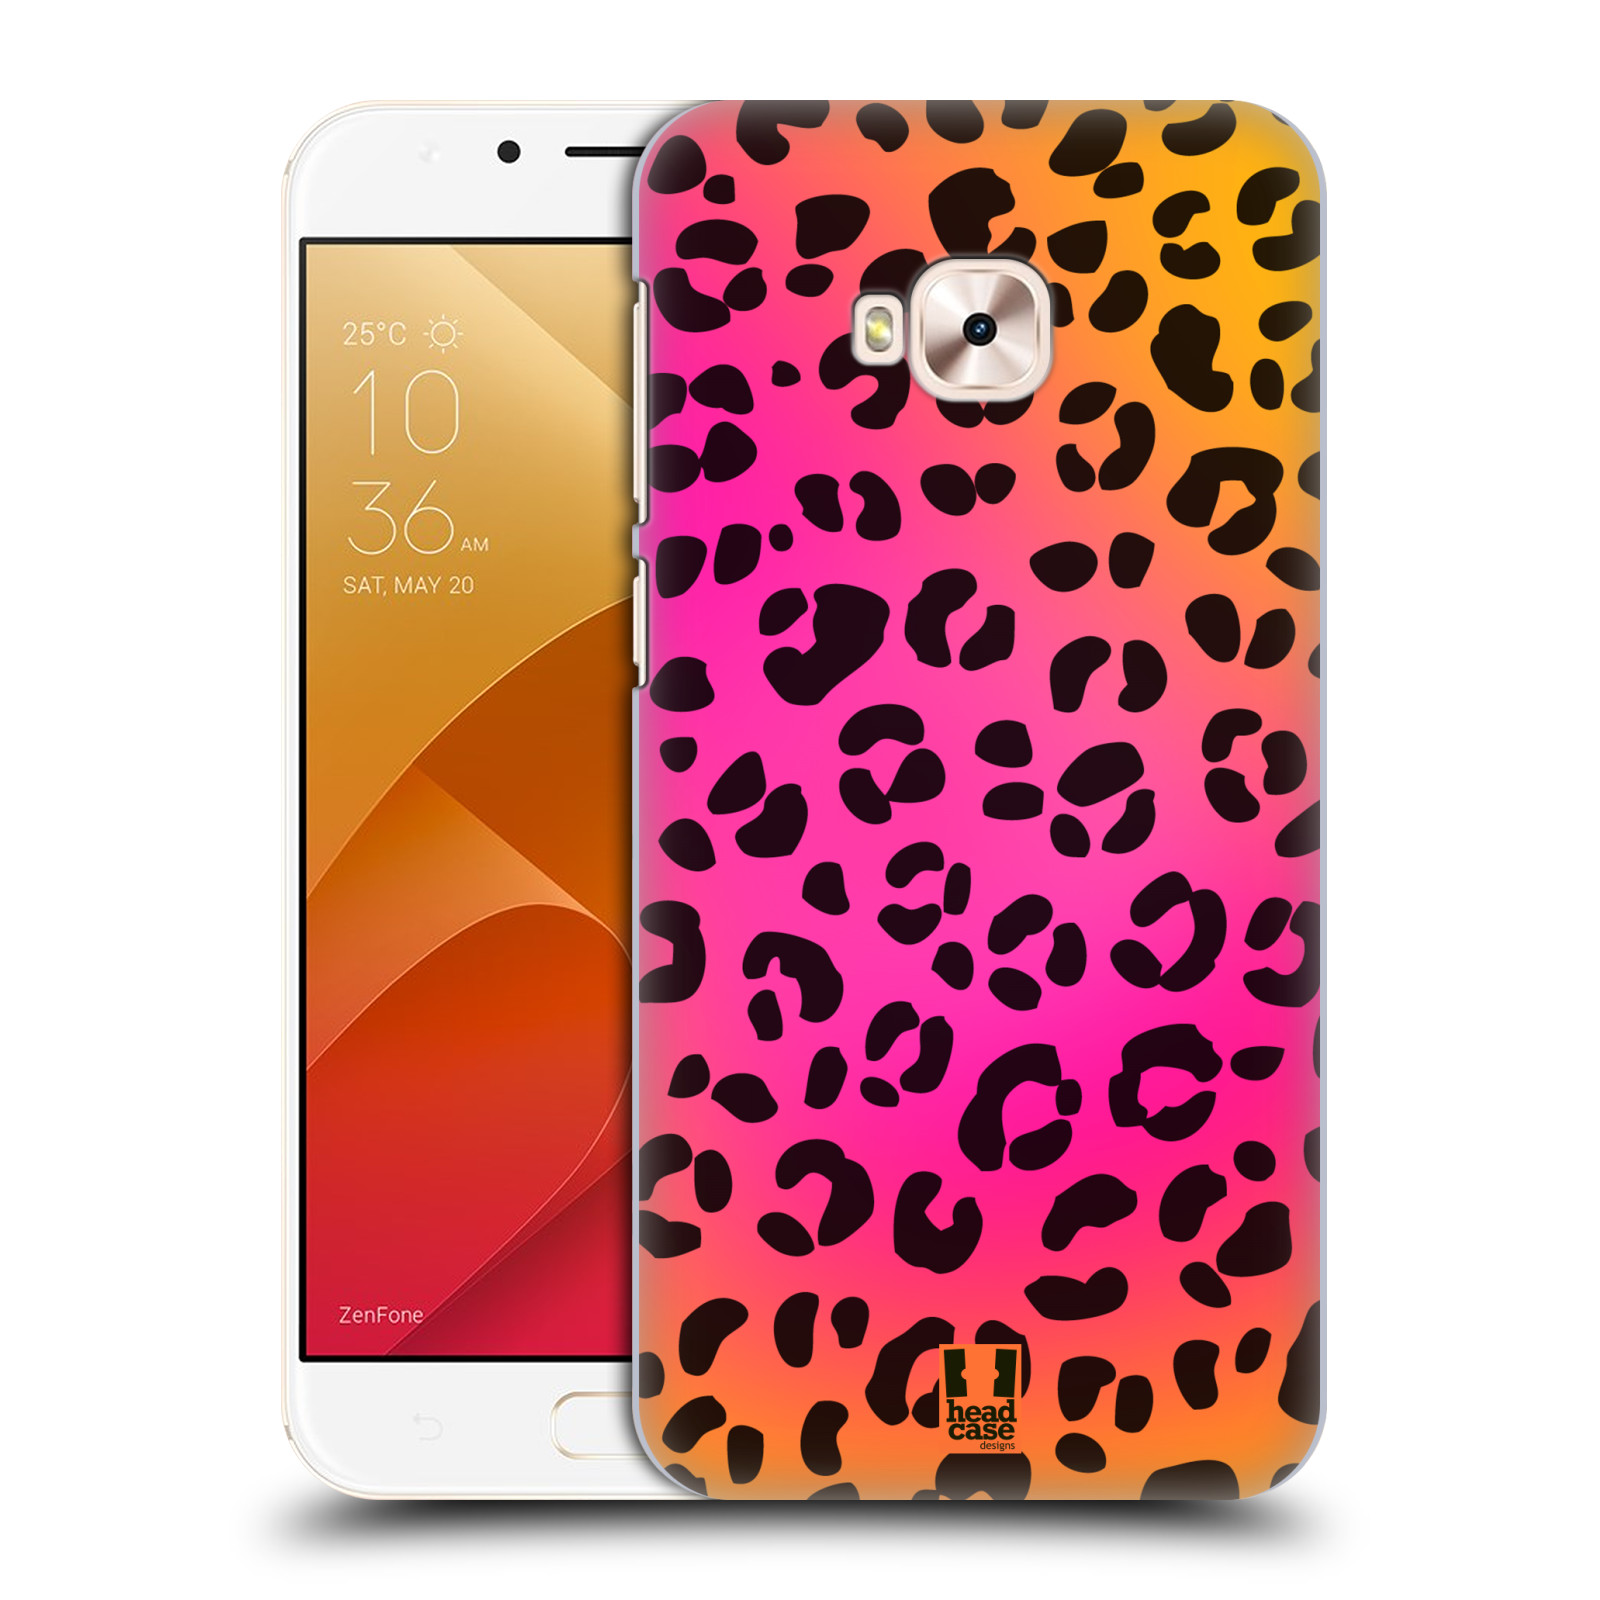 HEAD CASE plastový obal na mobil Asus Zenfone 4 Selfie Pro ZD552KL vzor Divočina zvíře růžový leopard